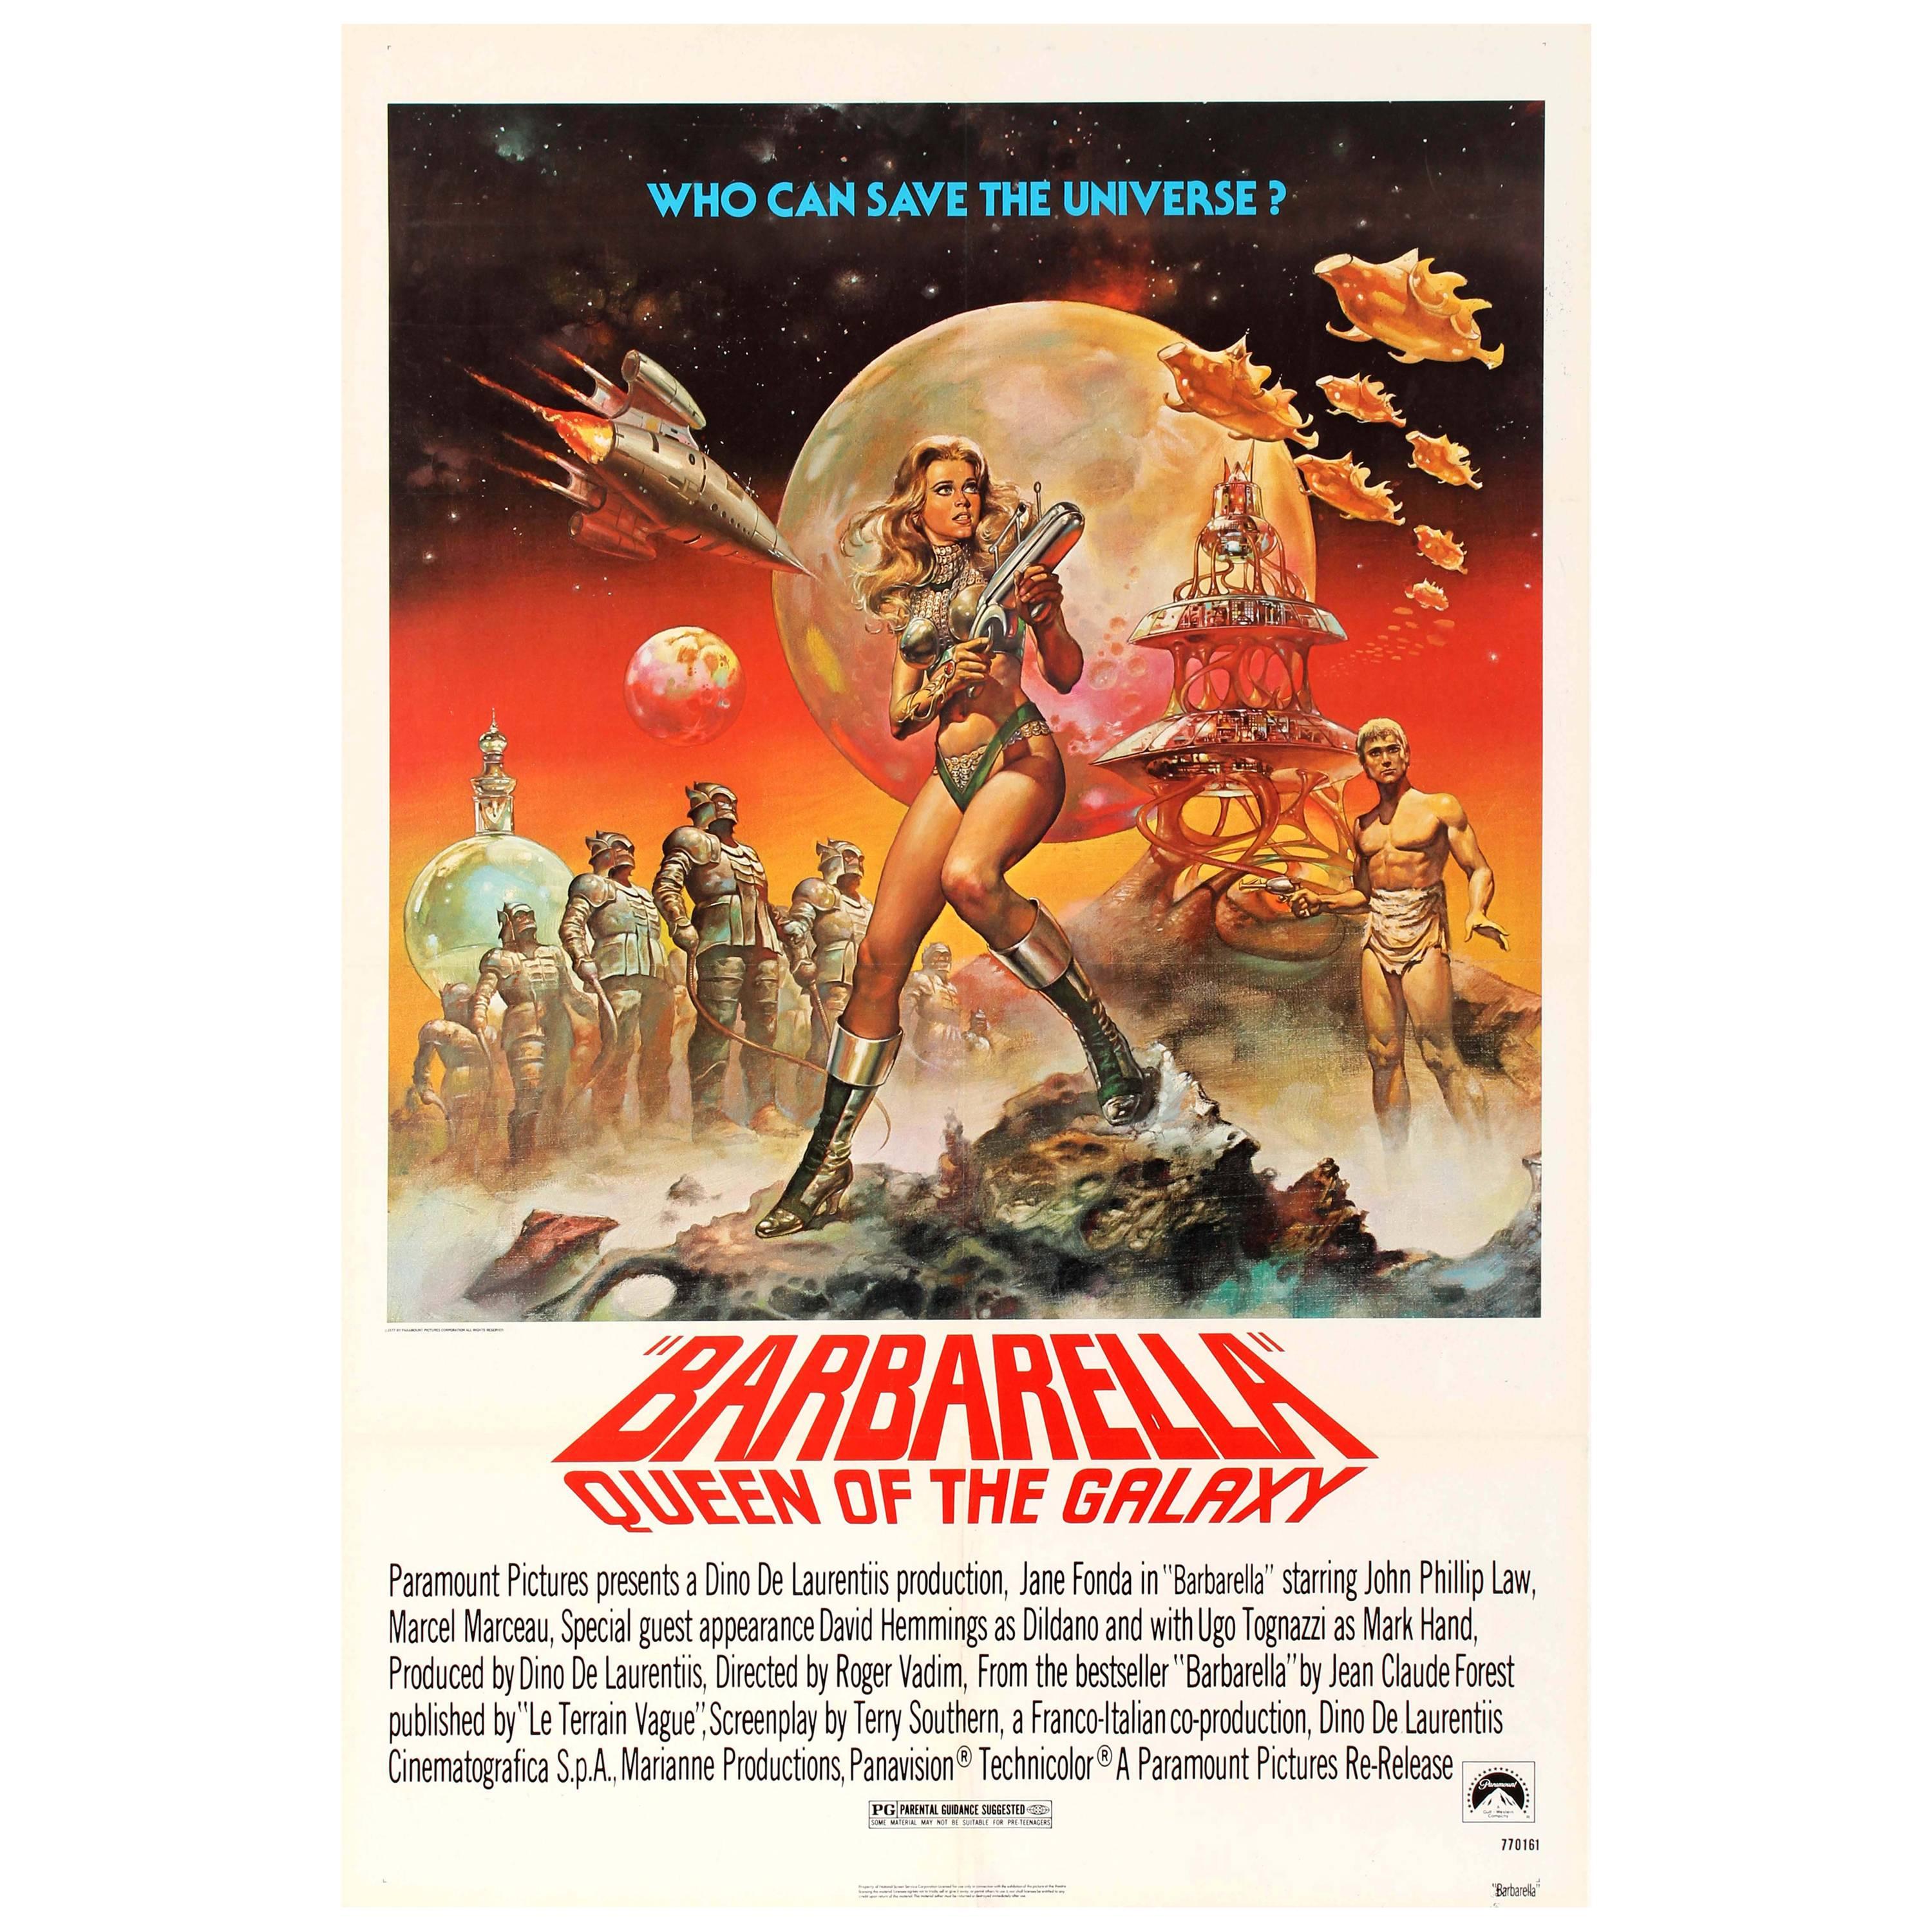 Original Barbarella Queen of the Galaxy Movie Poster (1977 Release) - Jane Fonda